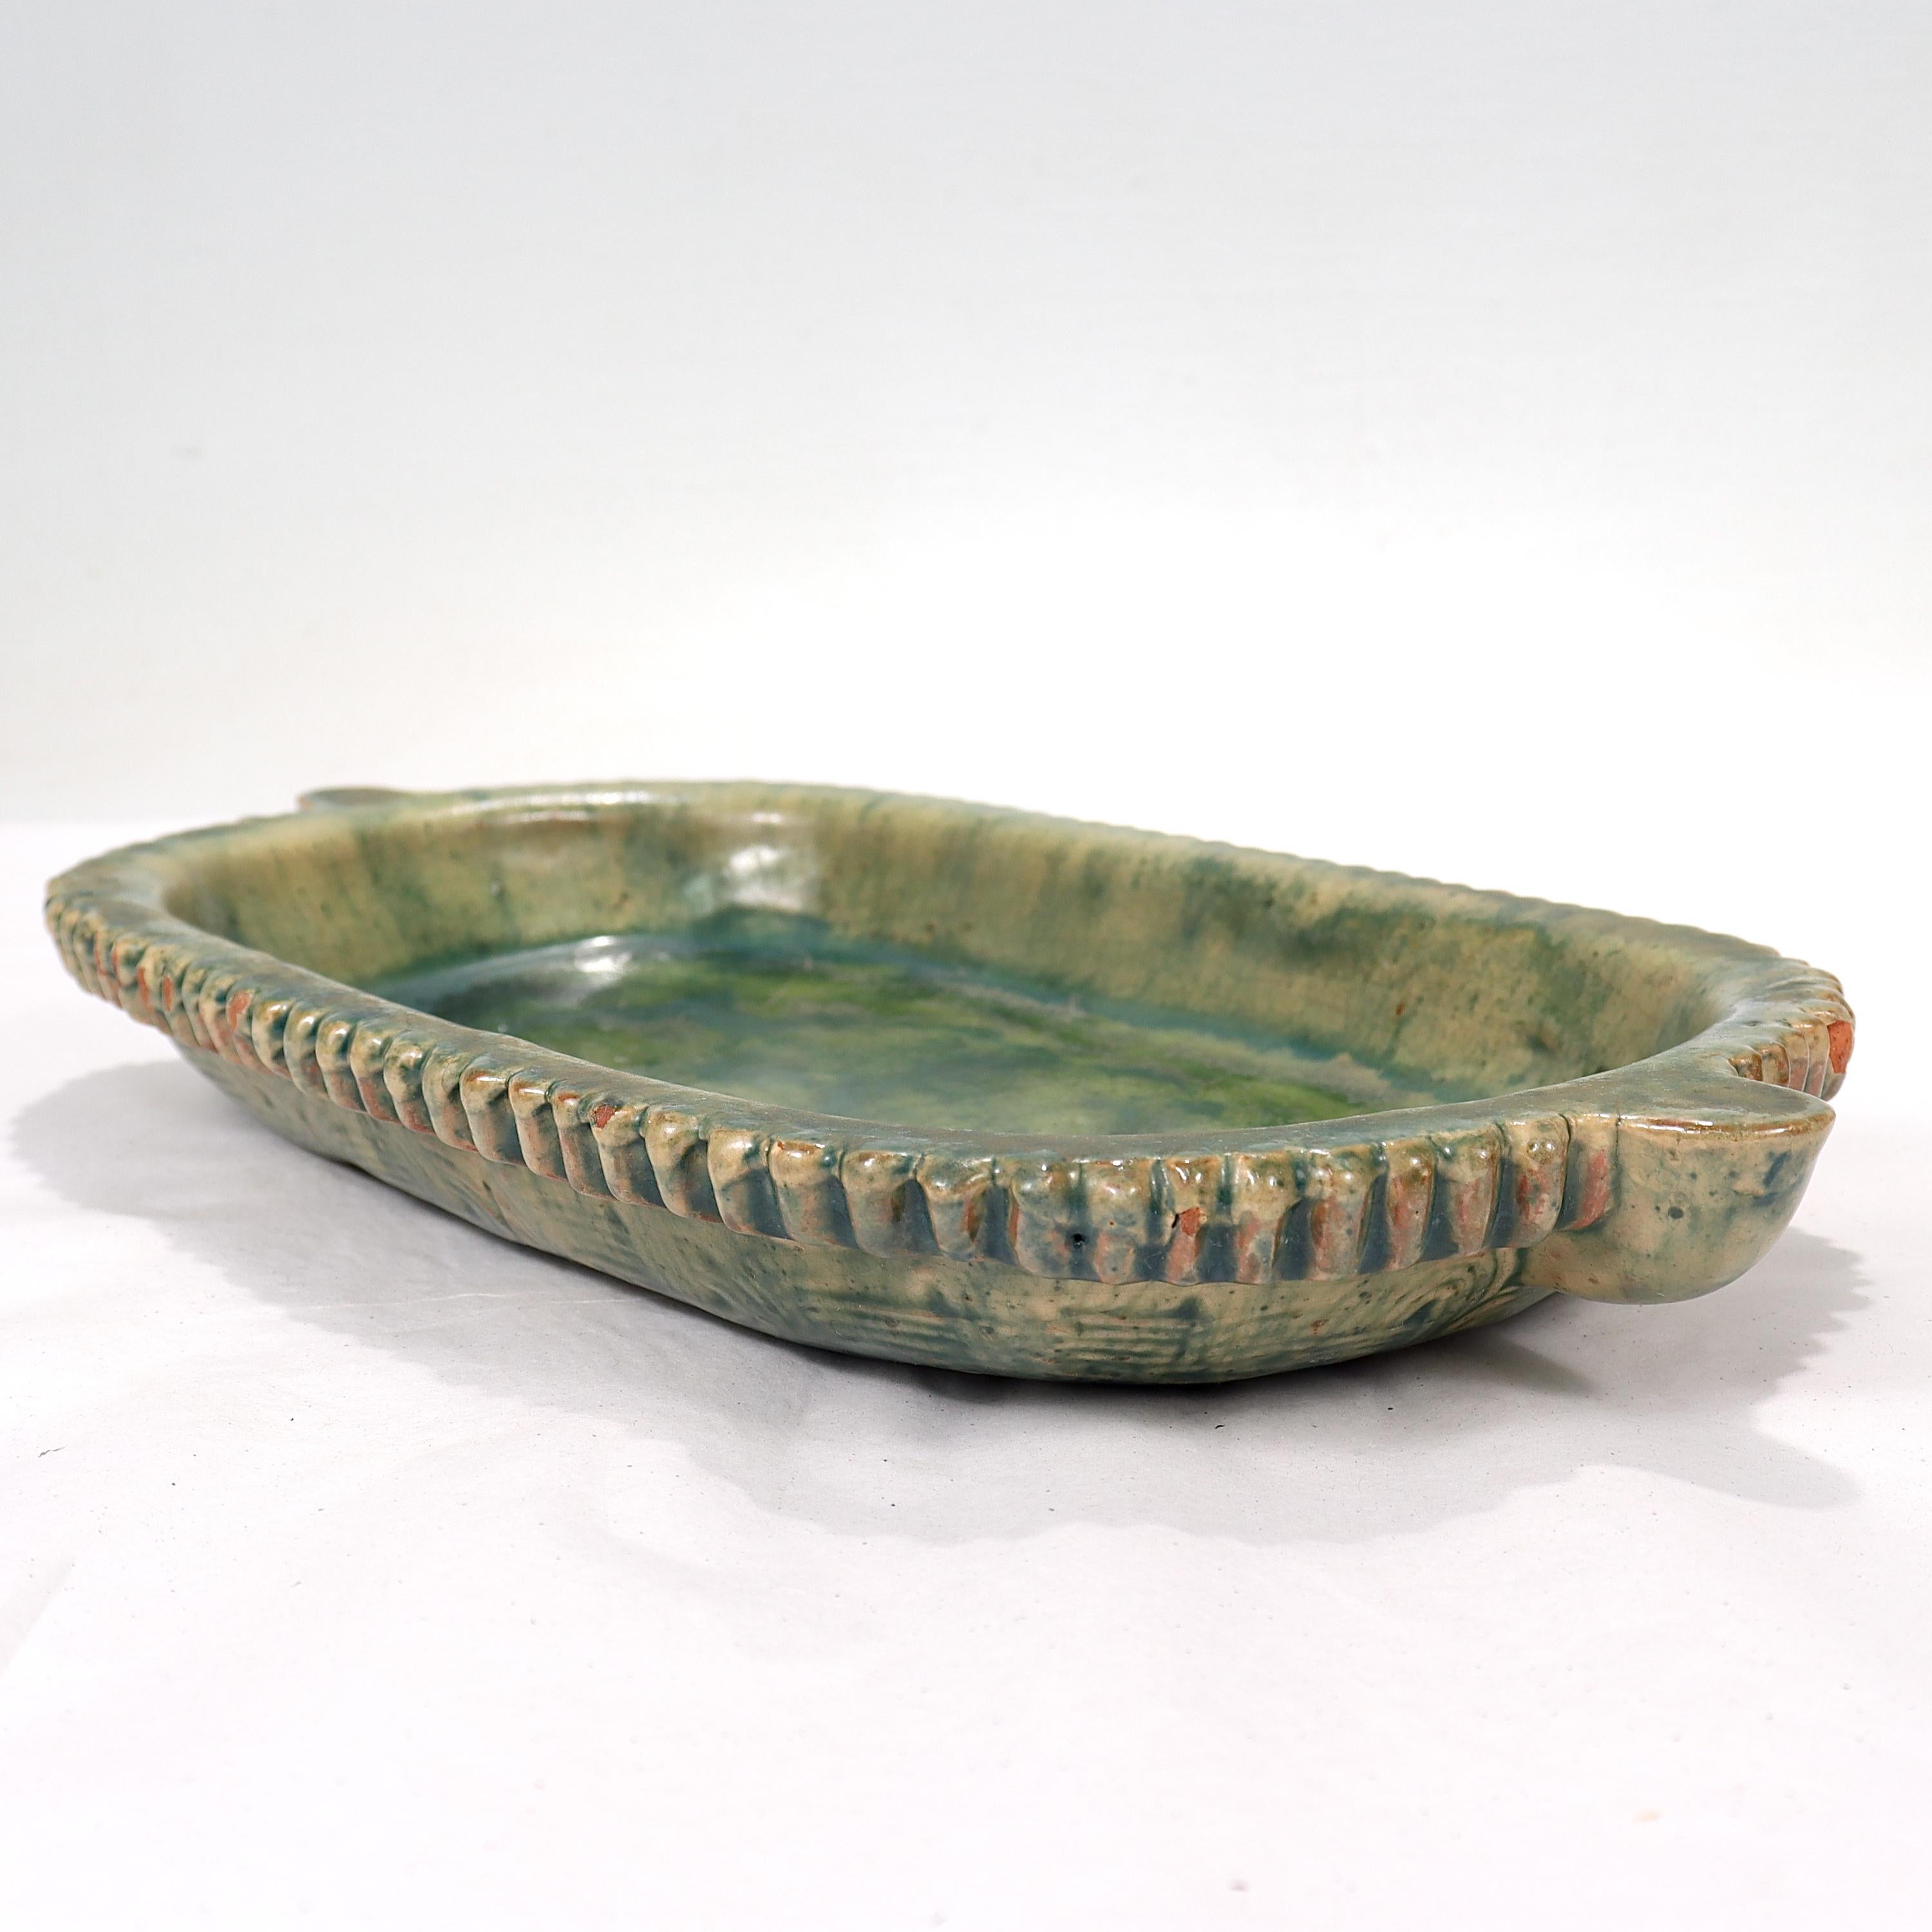 Eine feine, seltene, amerikanische Arts & Crafts Keramik niedrige Schale oder rechteckige Platte.

In Form einer langen, länglichen Schale oder eines Tellers mit hervorstehenden Henkeln an beiden Enden. Es gibt Craquelé überall, dass es ein